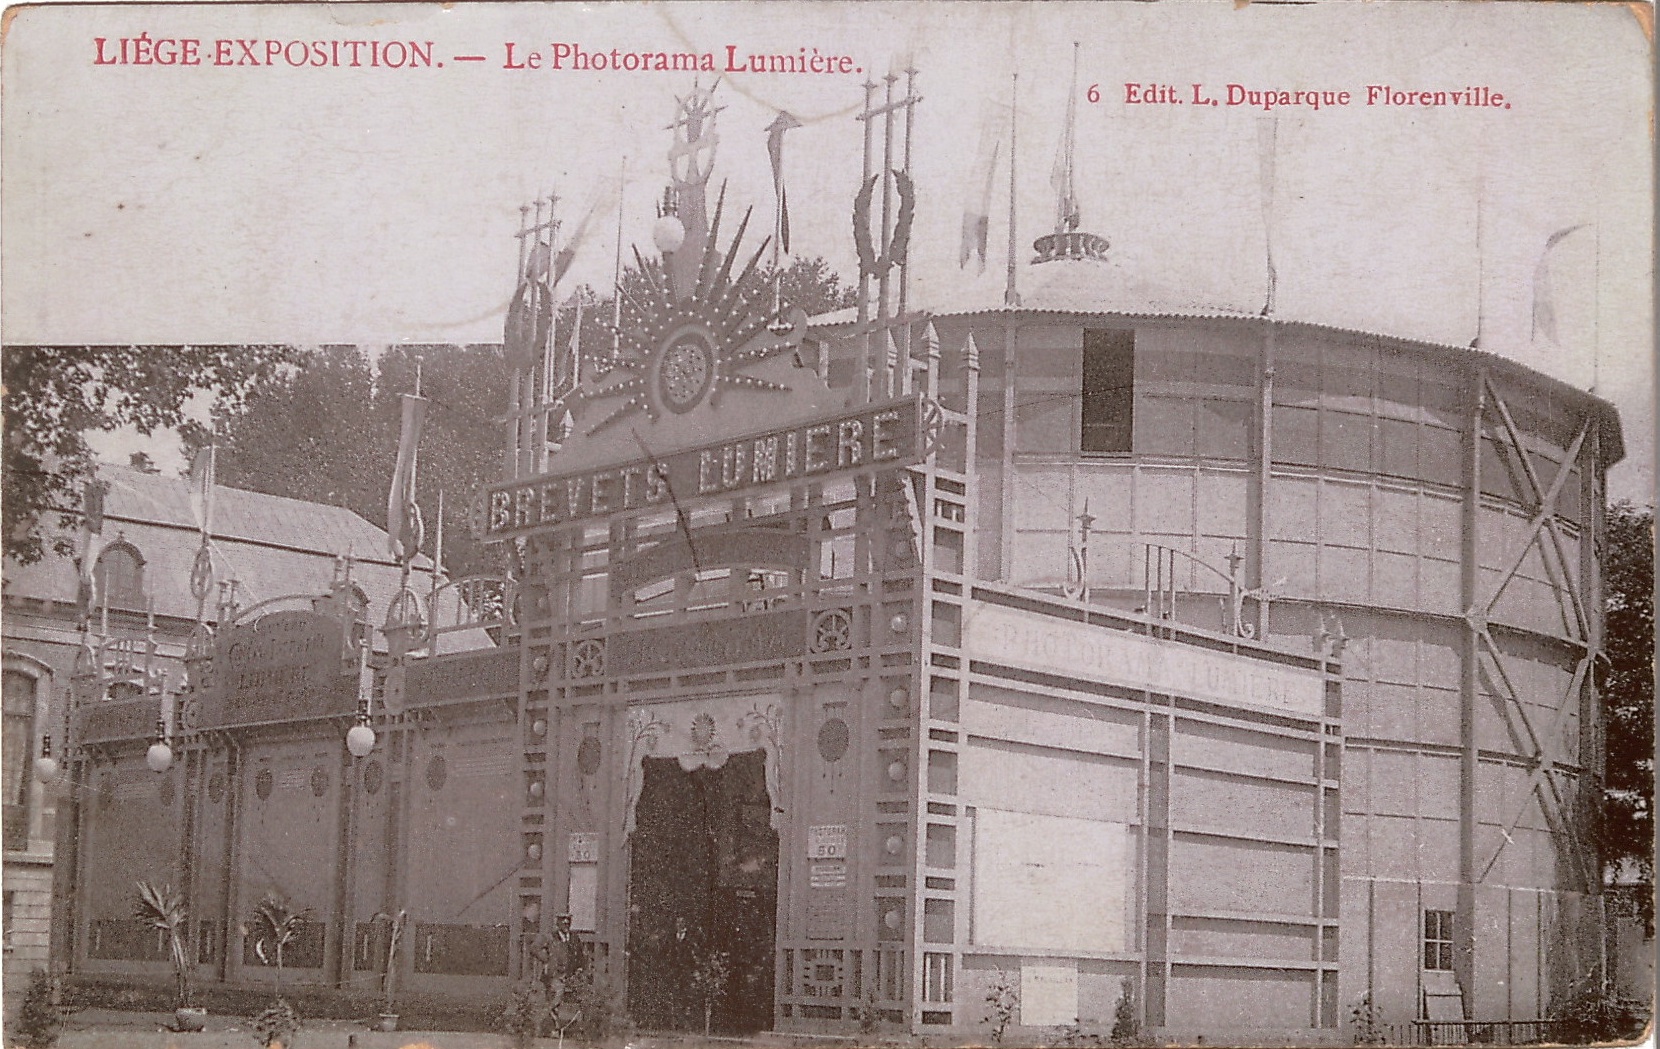 Le Photorama de Liège 1905